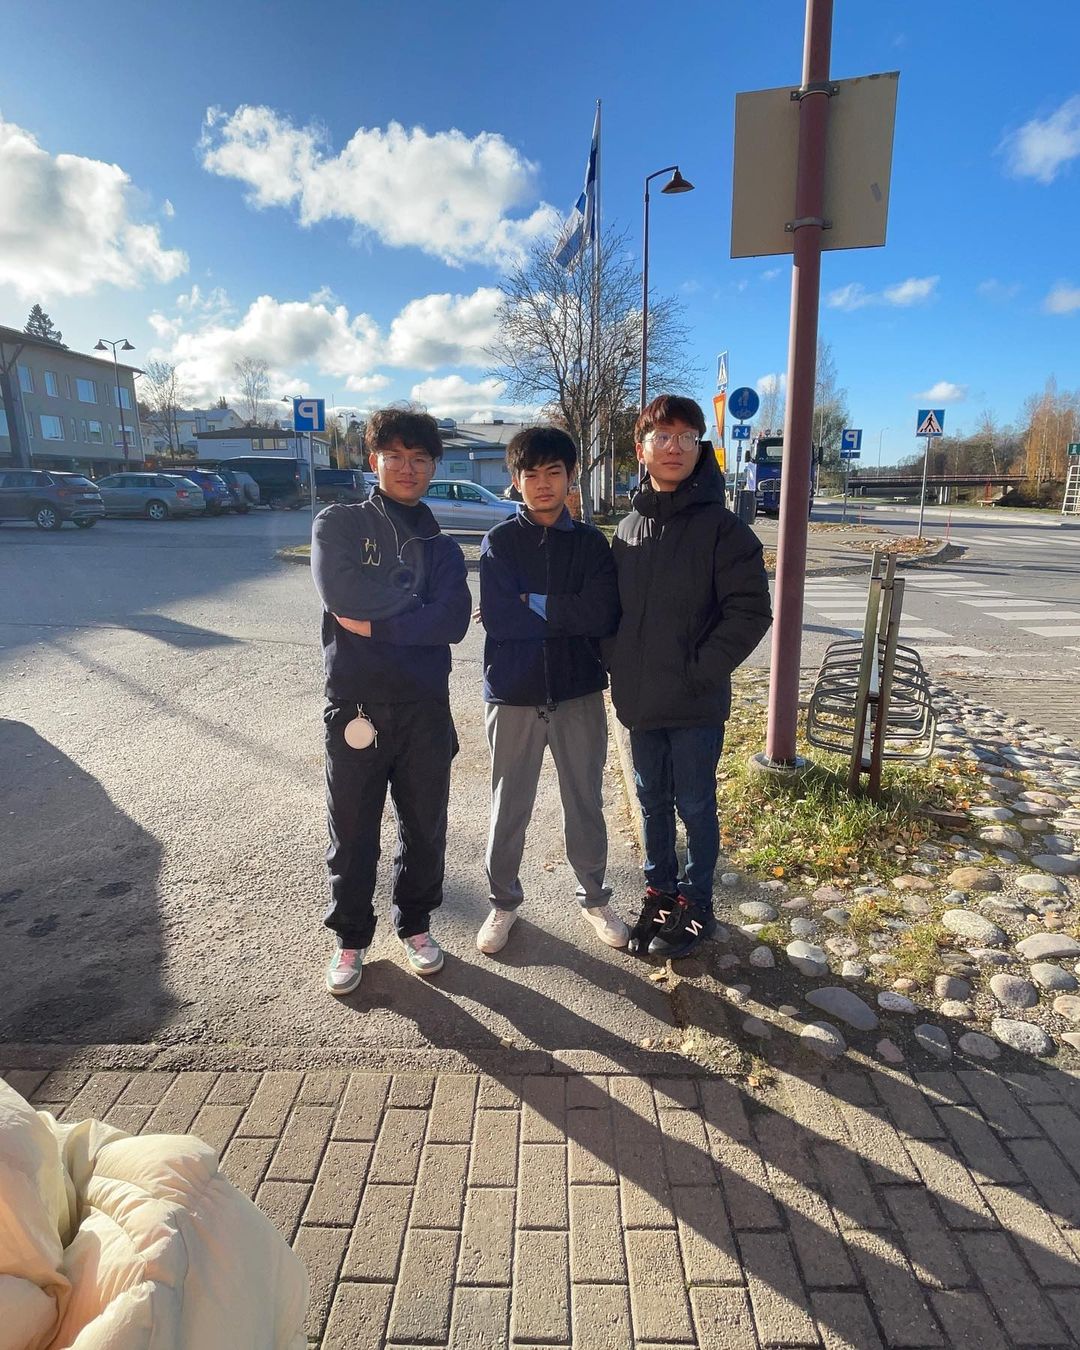 3 thanh niên Việt bỗng nổi tiếng sau 7749 "kiếp nạn" bán cafe muối ở Phần Lan: Thu nhập thì sao?- Ảnh 1.